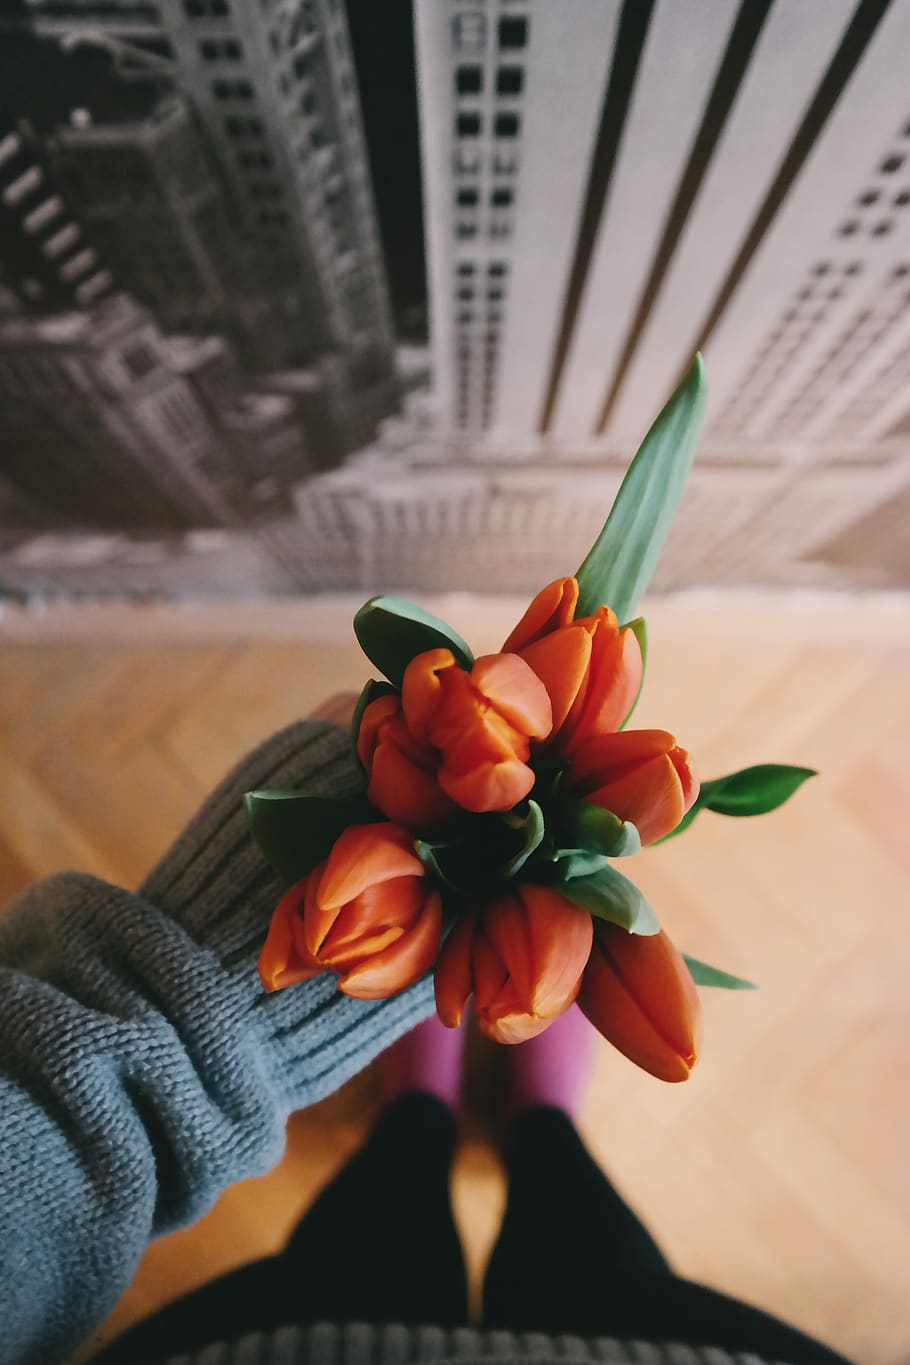 naranja, flor, pétalo, tulipán, mano, chaqueta, desenfoque, mano humana, tenencia, una persona